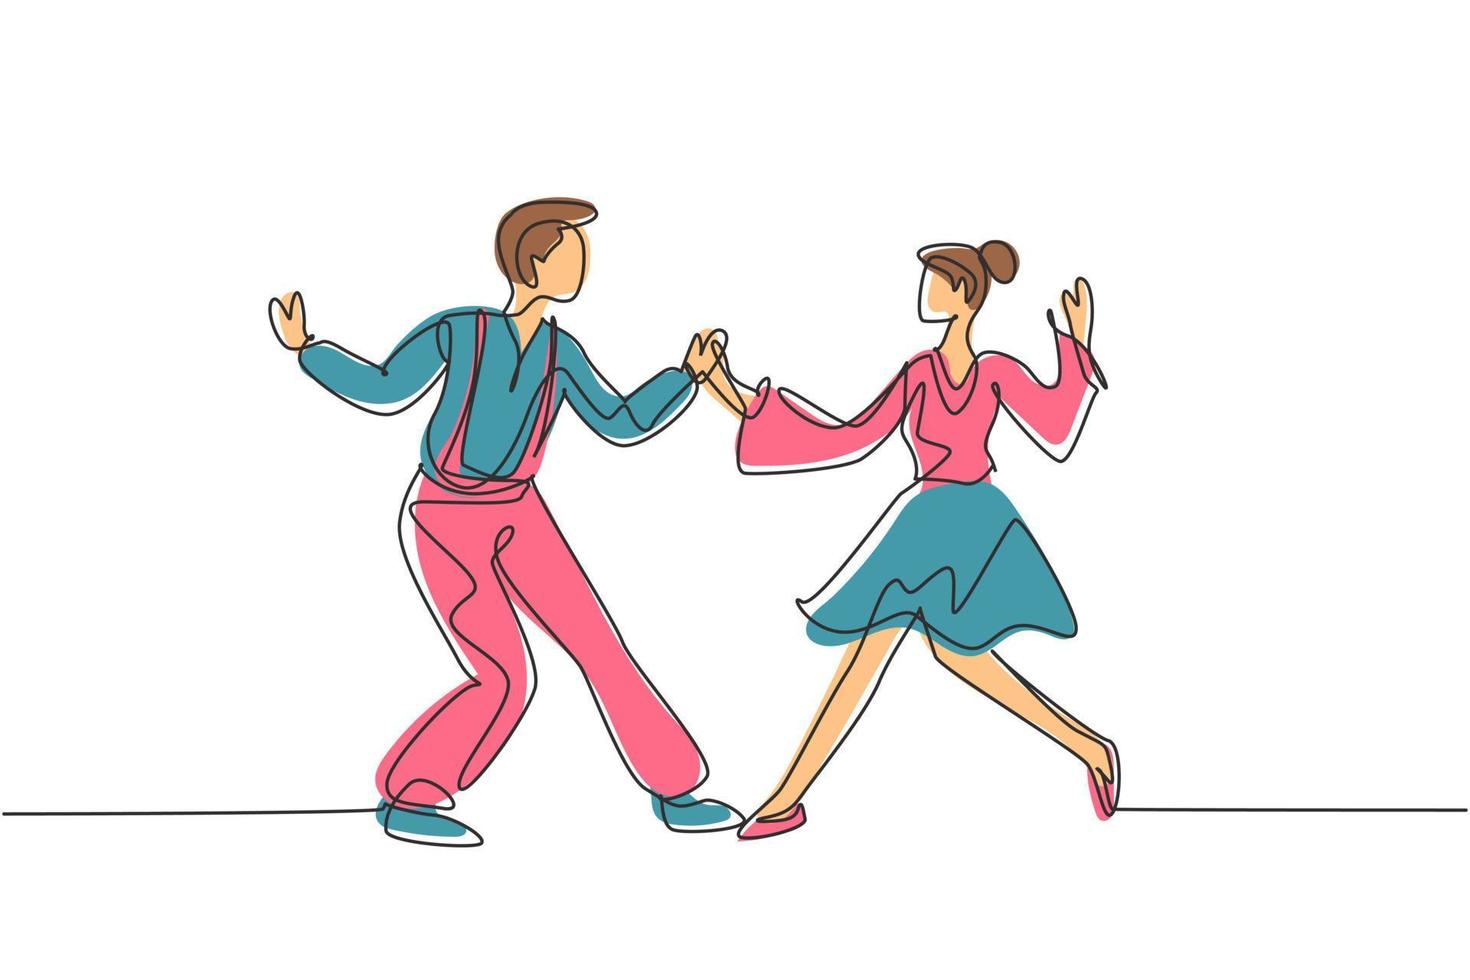 continue een lijntekening man en vrouw dansen lindy hop of swing samen. mannelijke en vrouwelijke personages die dansen op school of feest. enkele lijn tekenen ontwerp vector grafische afbeelding